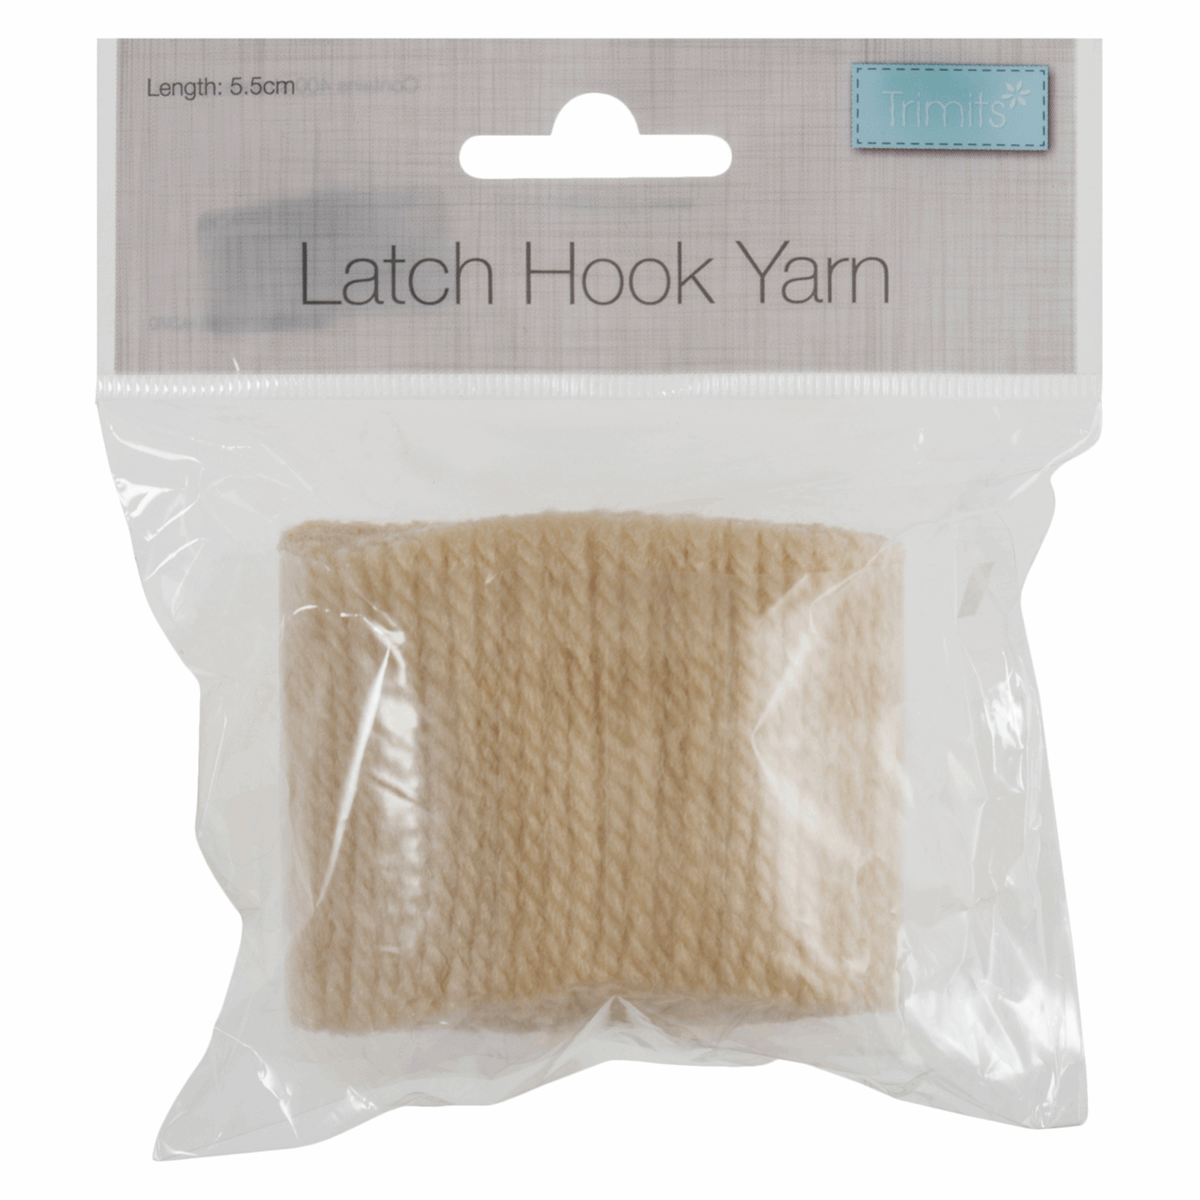 Latch Hook Yarn 5.5cm - Ecru